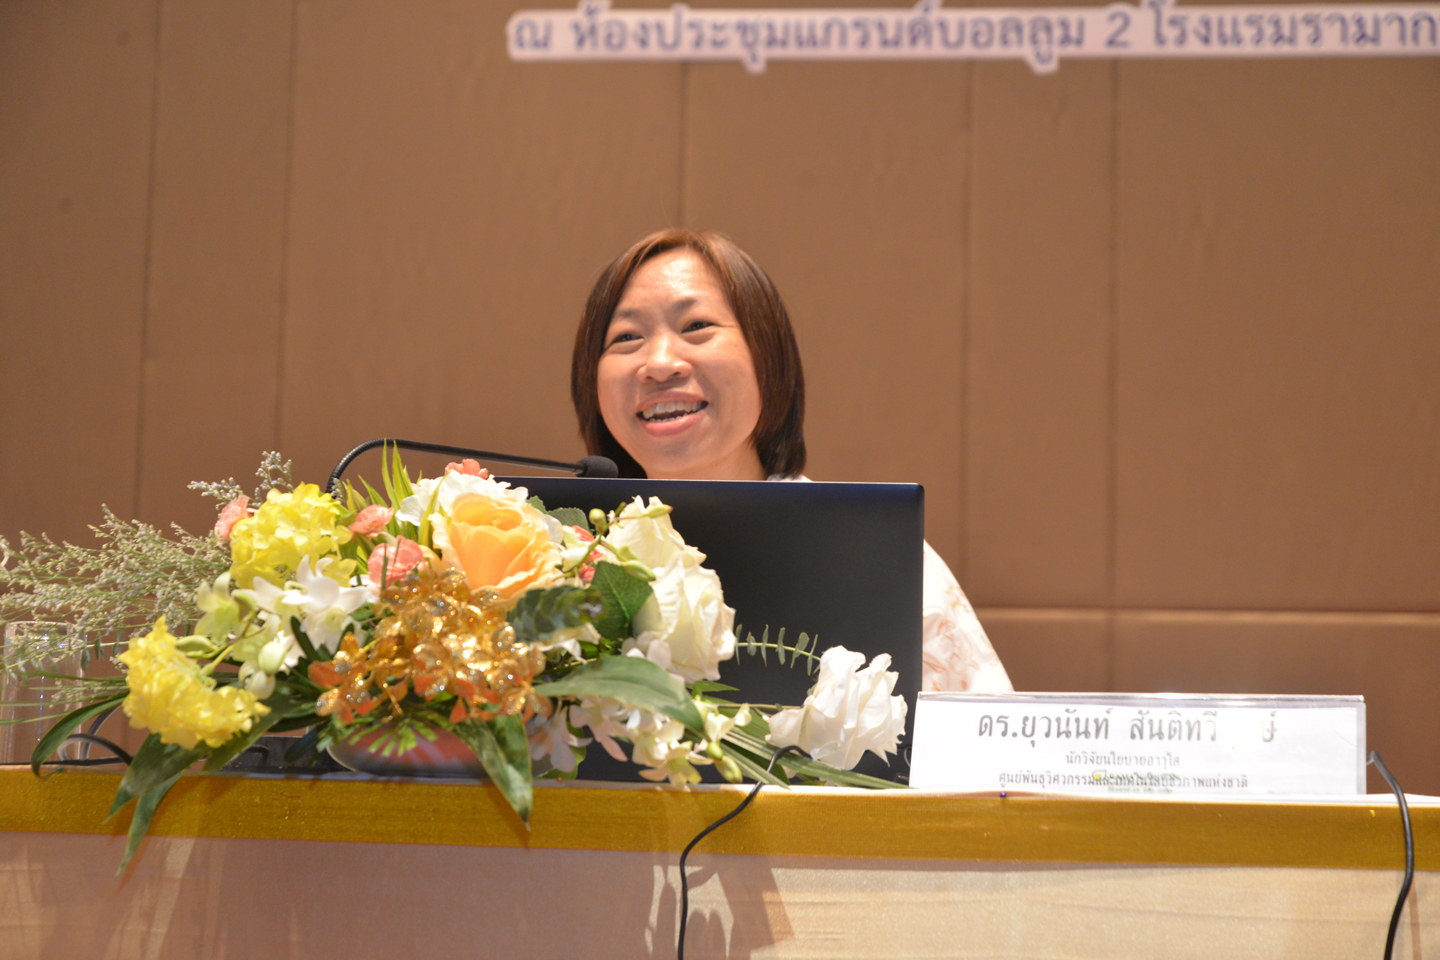 ประชุมแนวปฏิบัติการจัดทำระบบบัญชีเศรษฐกิจสิ่งแวดล้อม (SEEA) ของประเทศไทย